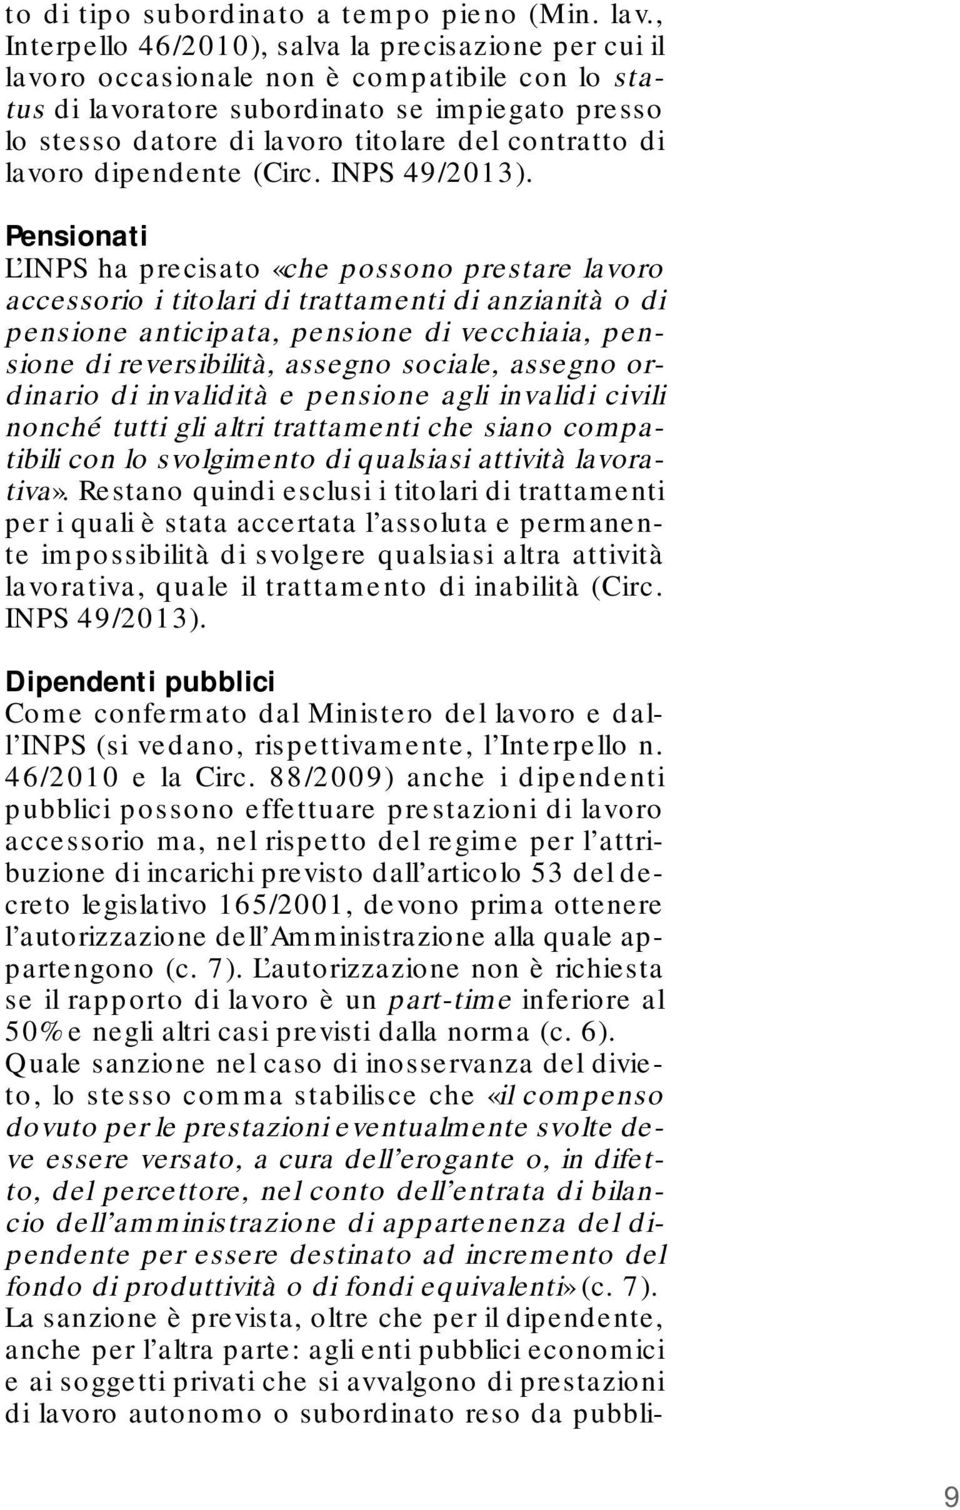 contratto di lavoro dipendente (Circ. INPS 49/2013).